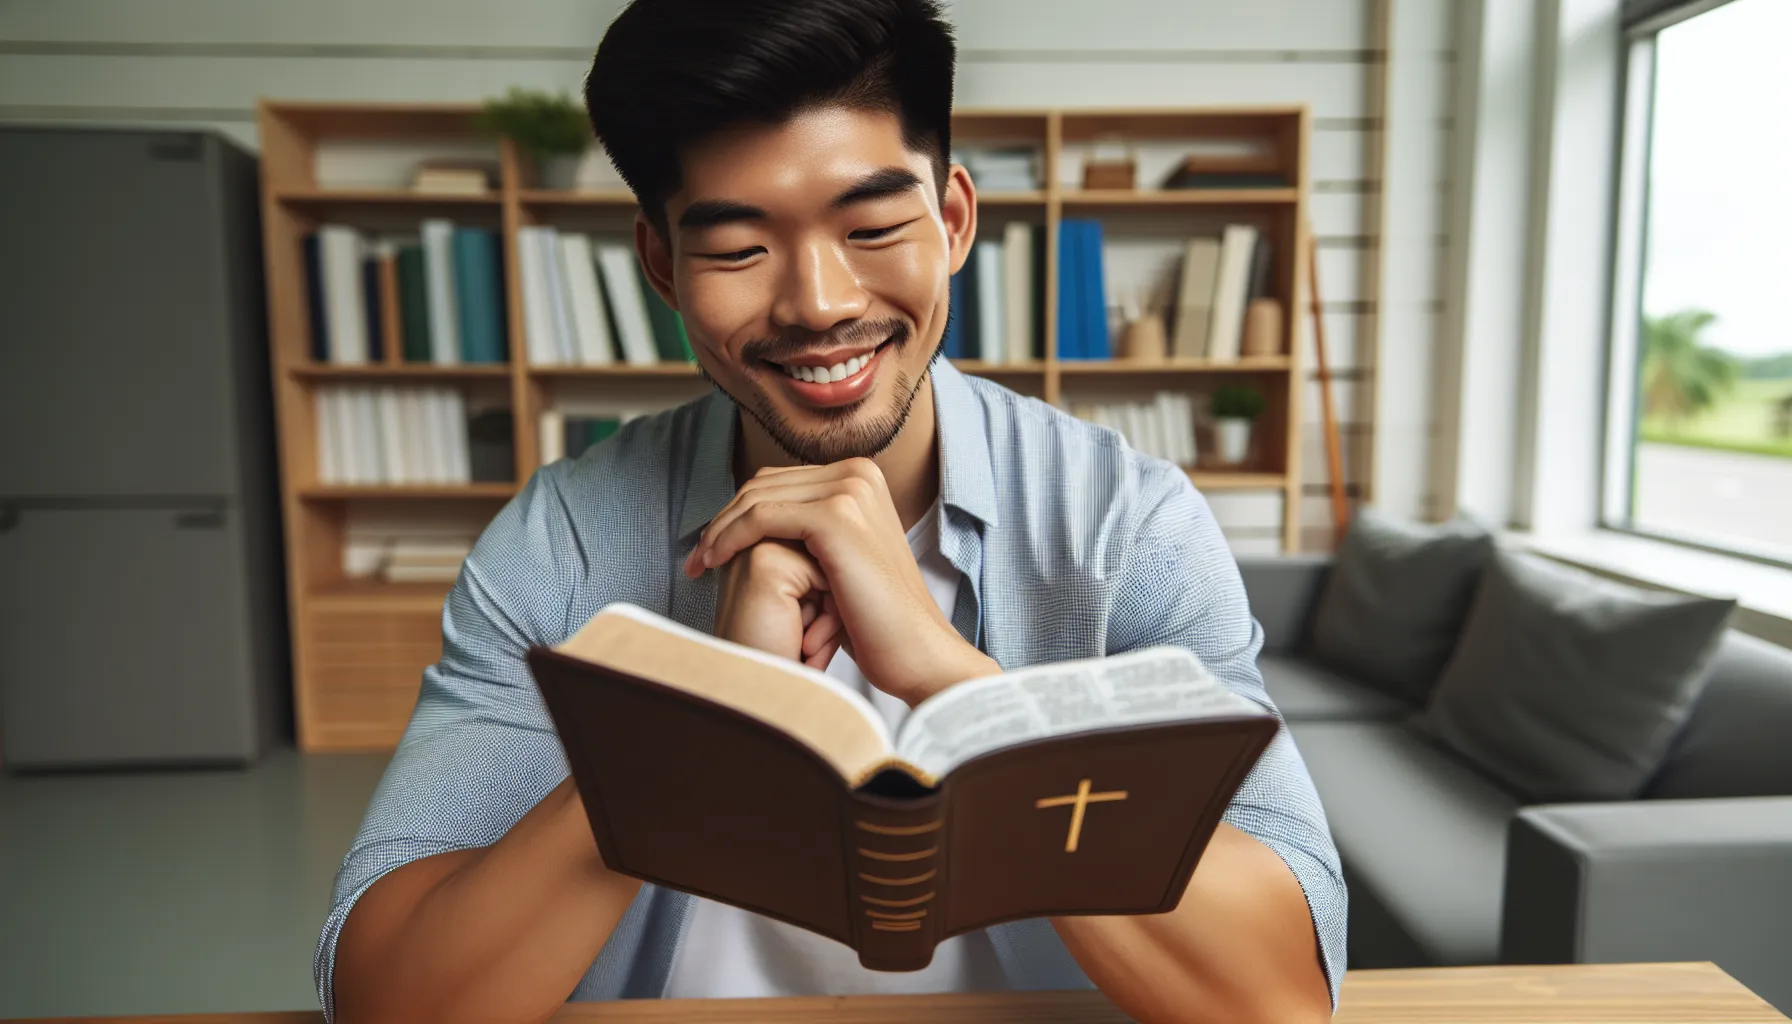 Imagen de un hombre leyendo la Biblia con una sonrisa, representando el estudio de los principios bíblicos para ser un esposo cristiano.